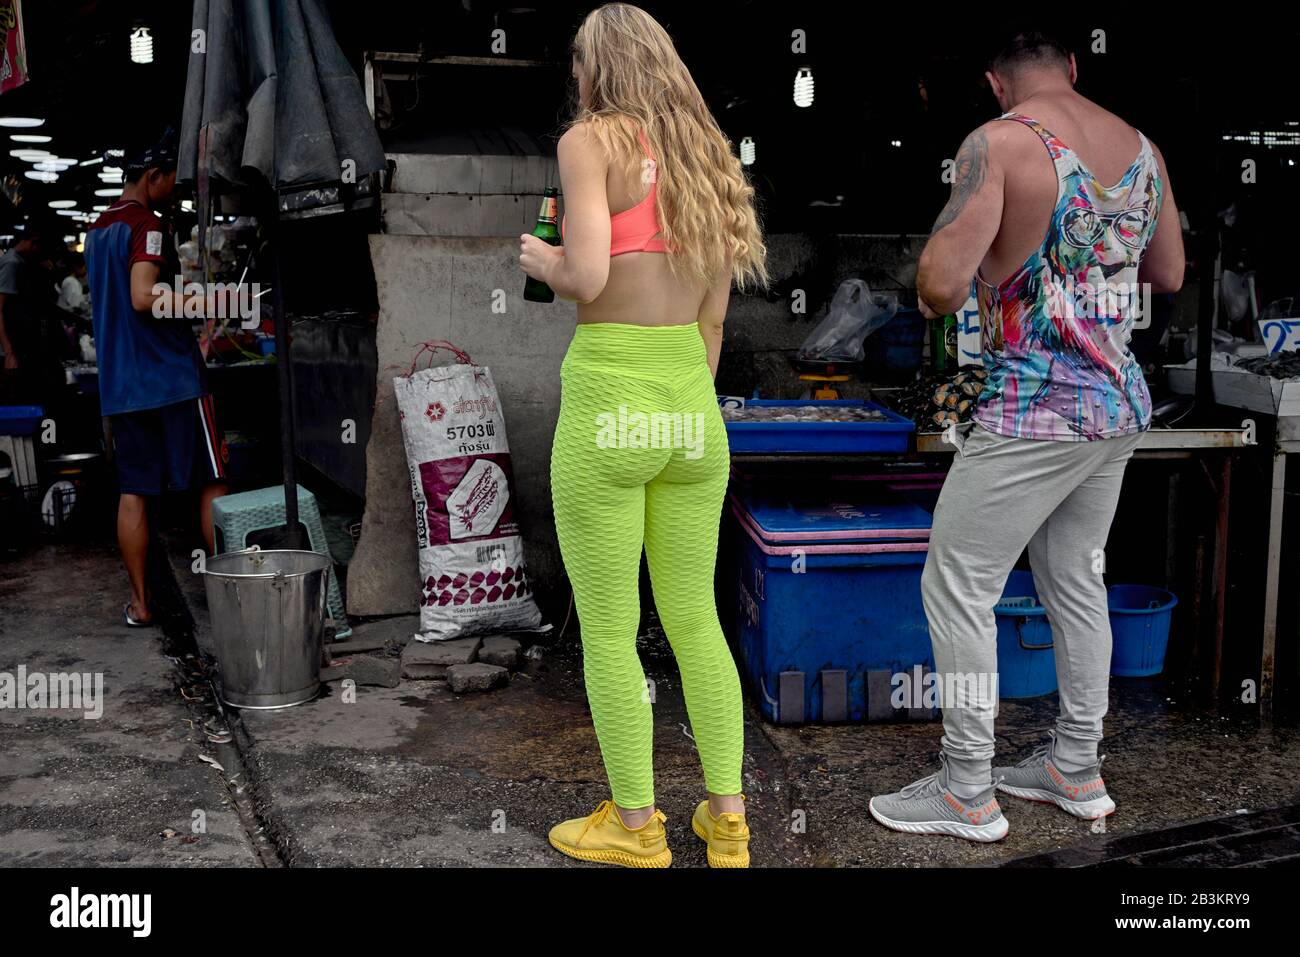 Leggings. Mujer con ropa colorida en la calle, incluyendo leggins